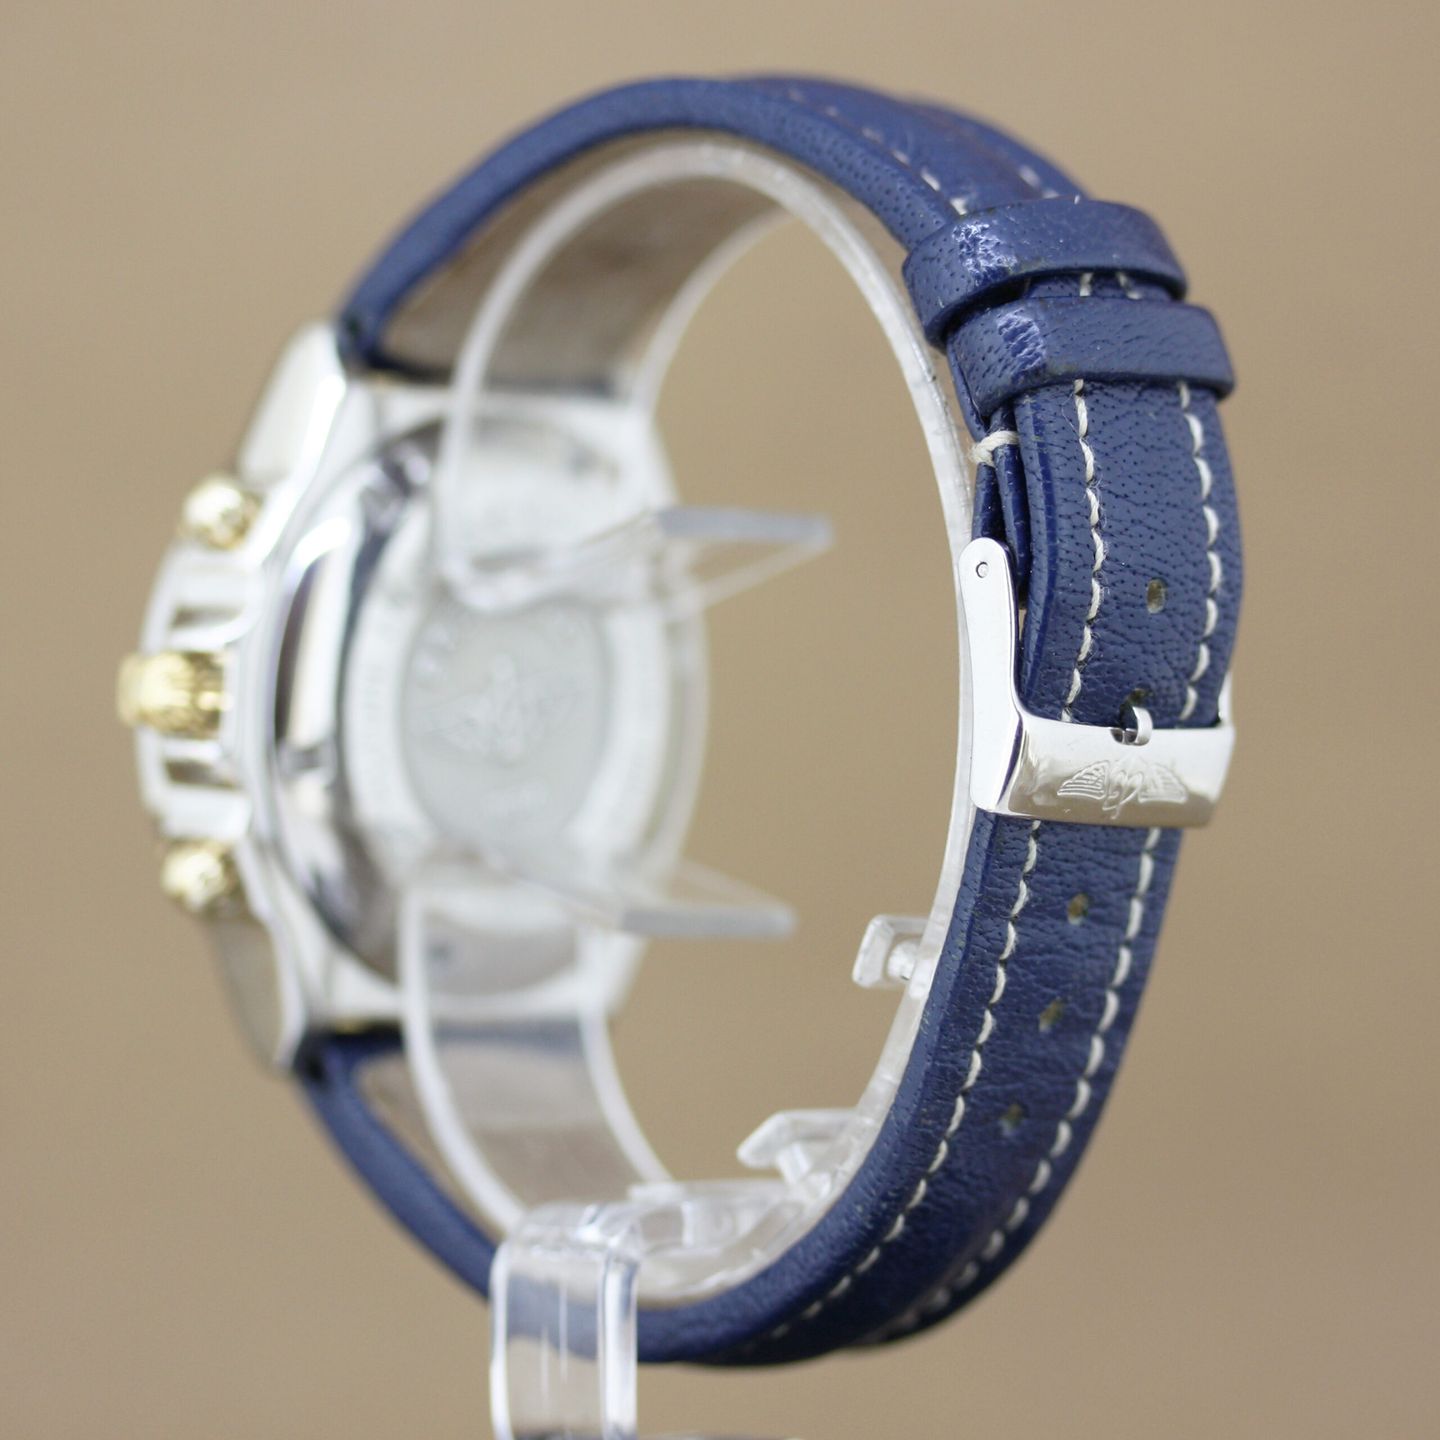 Breitling Crosswind Racing B13055 (Unknown (random serial)) - Blue dial 43 mm Steel case (6/8)